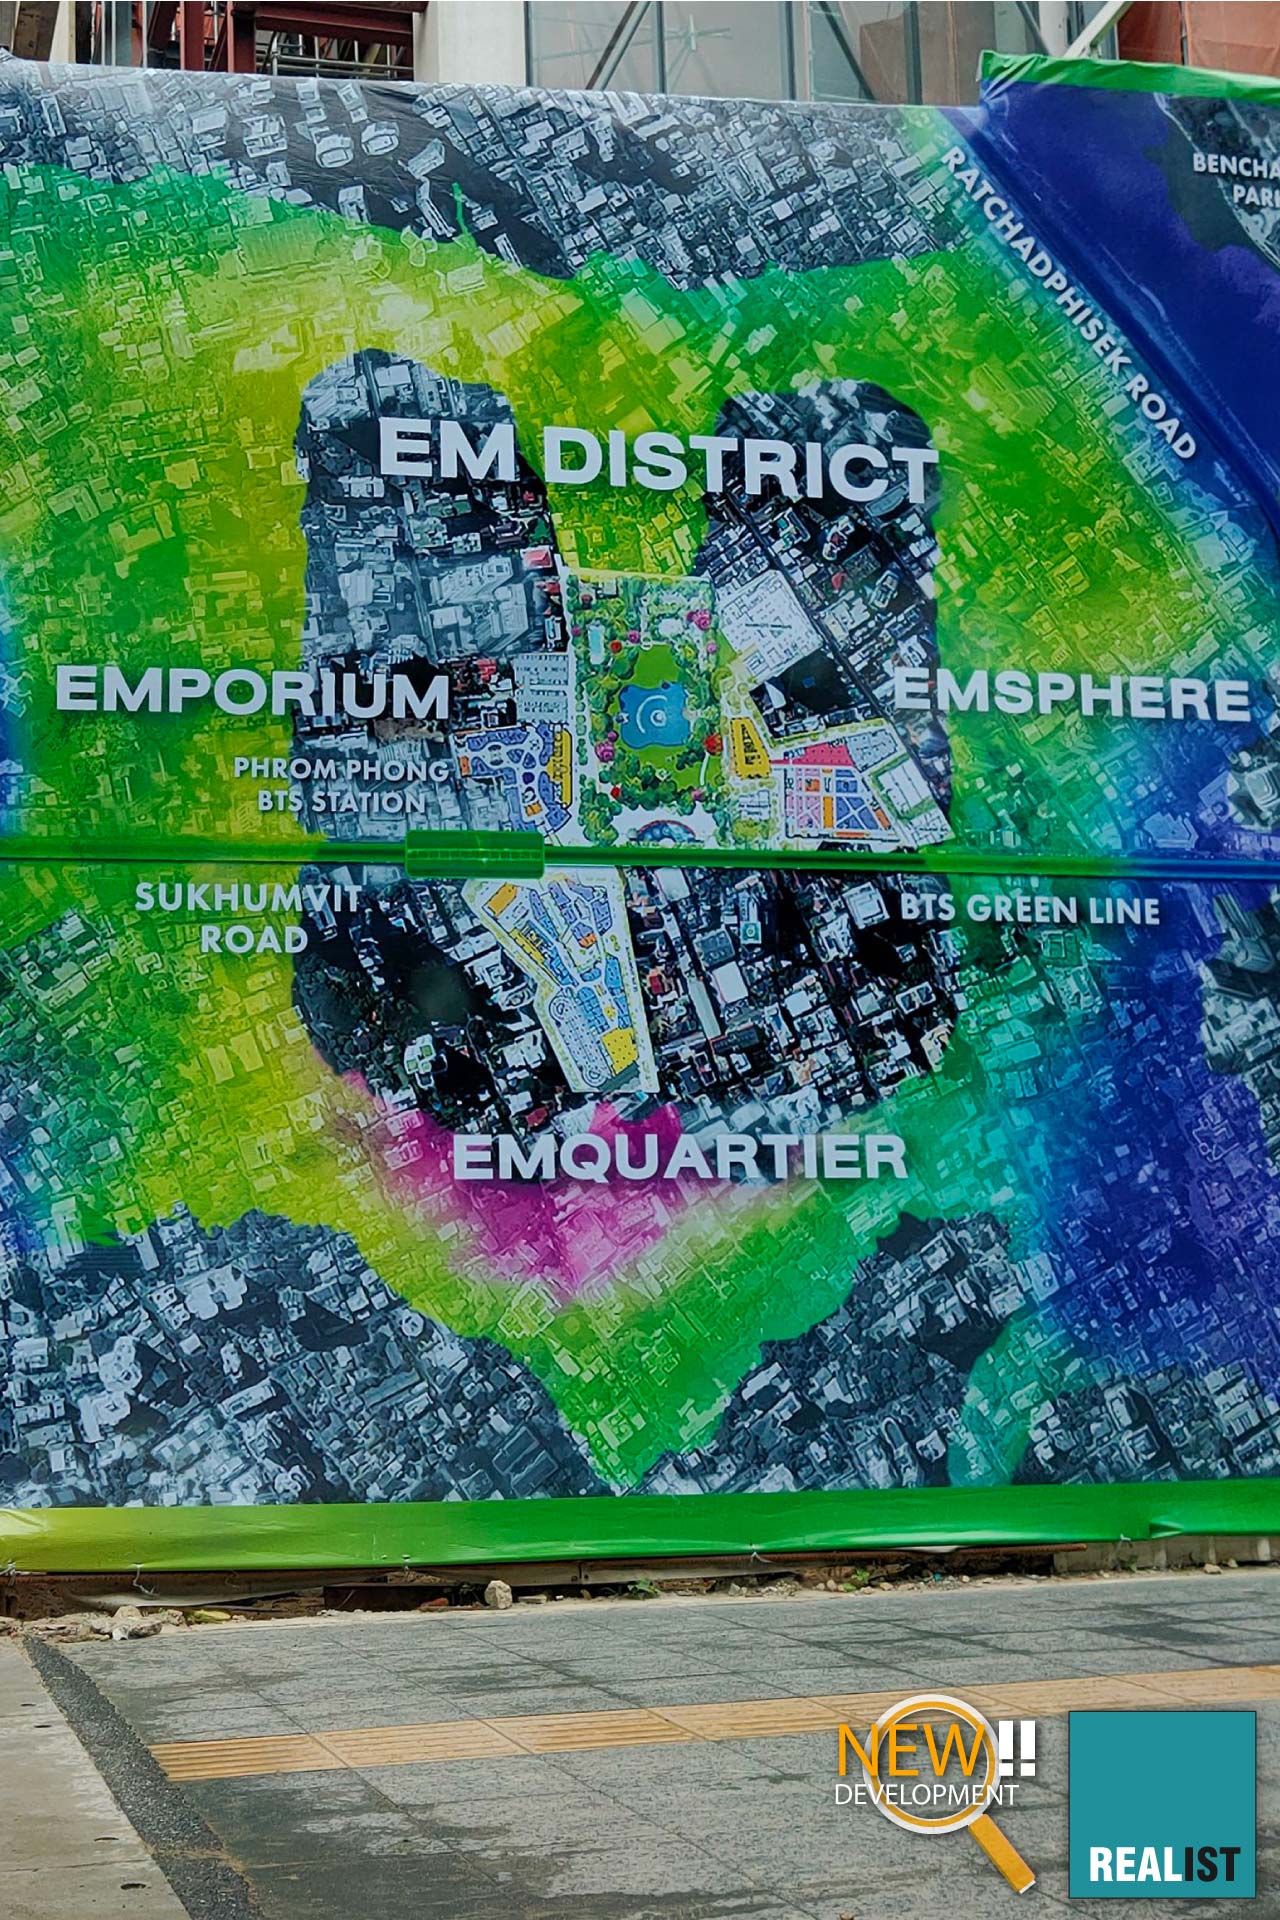 The EM District in Bangkok - The Emporium, EmQuartier and EmSphere